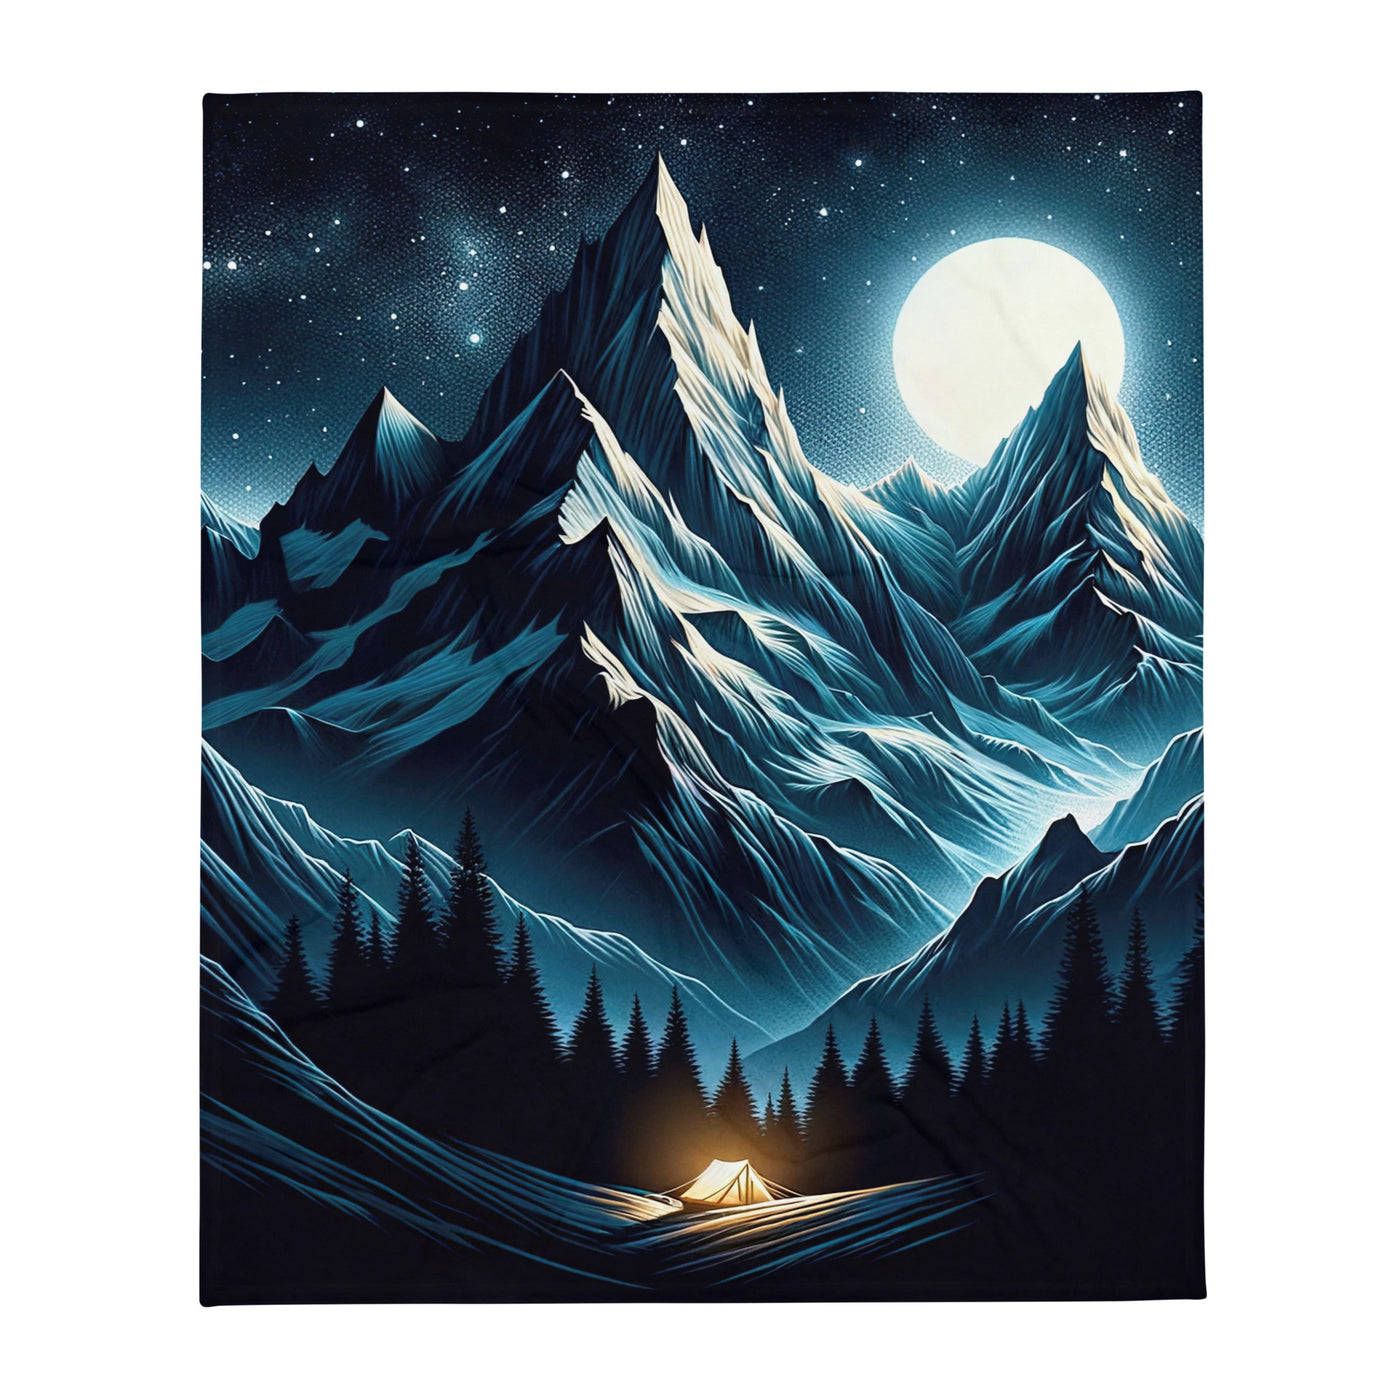 Alpennacht mit Zelt: Mondglanz auf Gipfeln und Tälern, sternenklarer Himmel - Überwurfdecke berge xxx yyy zzz 127 x 152.4 cm